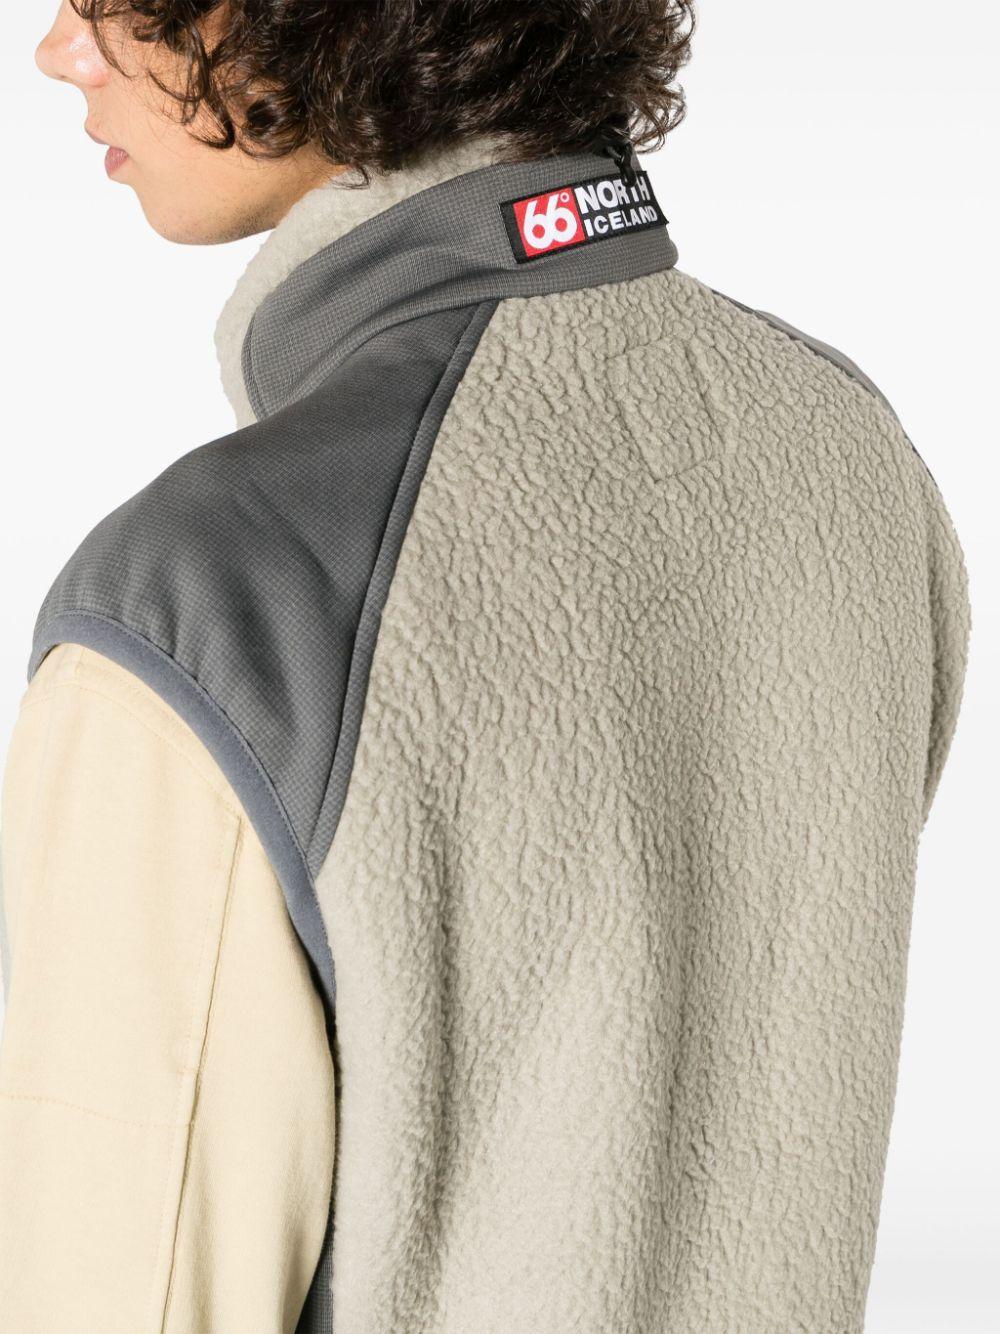 66 North Tindur Zip-up Fleece Vest in Natural for Men